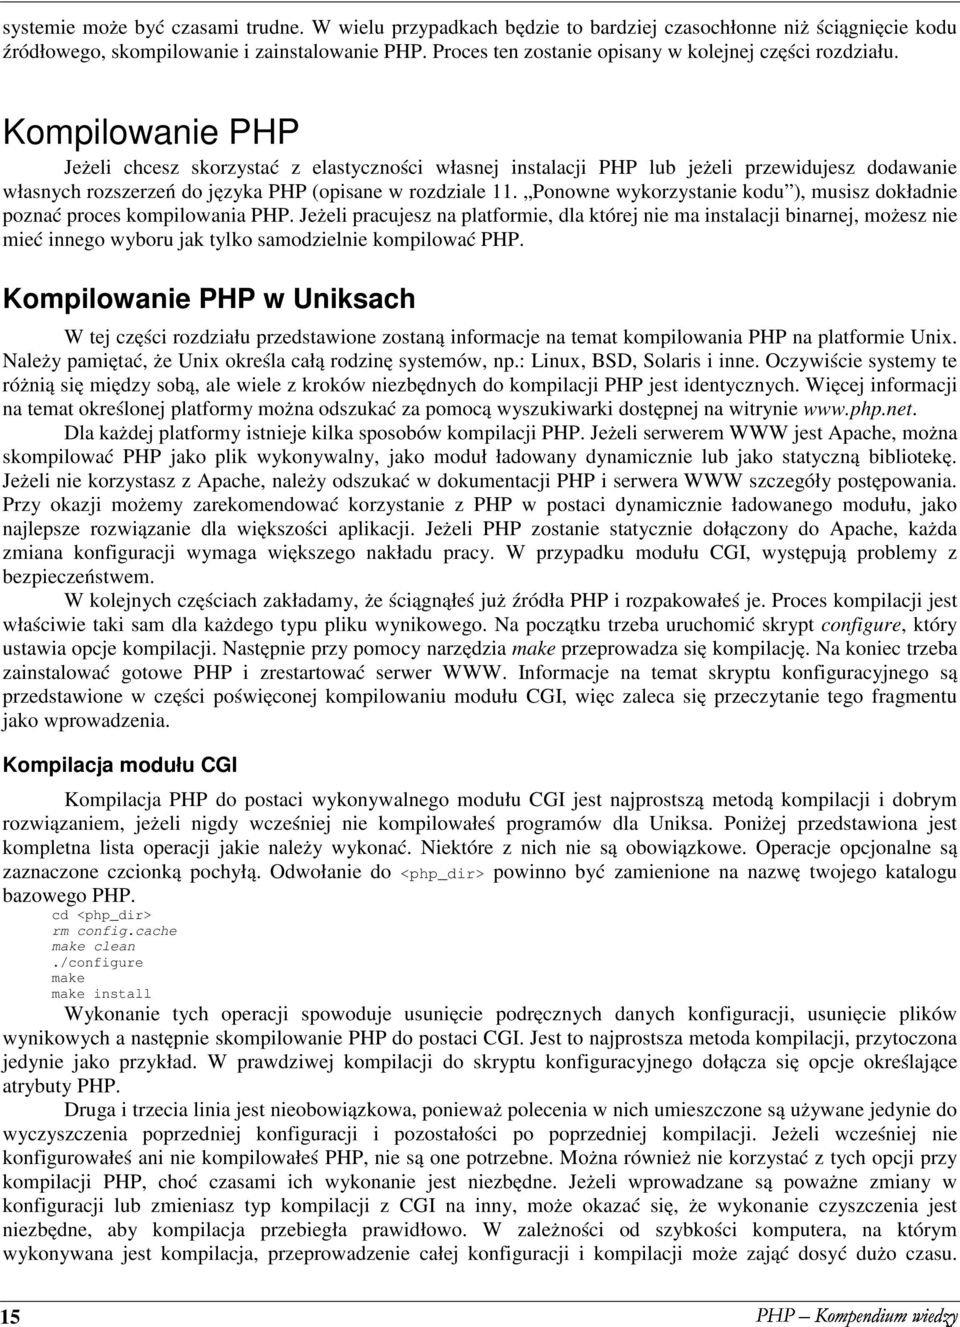 Kompilowanie PHP Jeżeli chcesz skorzystać z elastyczności własnej instalacji PHP lub jeżeli przewidujesz dodawanie własnych rozszerzeń do języka PHP (opisane w rozdziale 11.